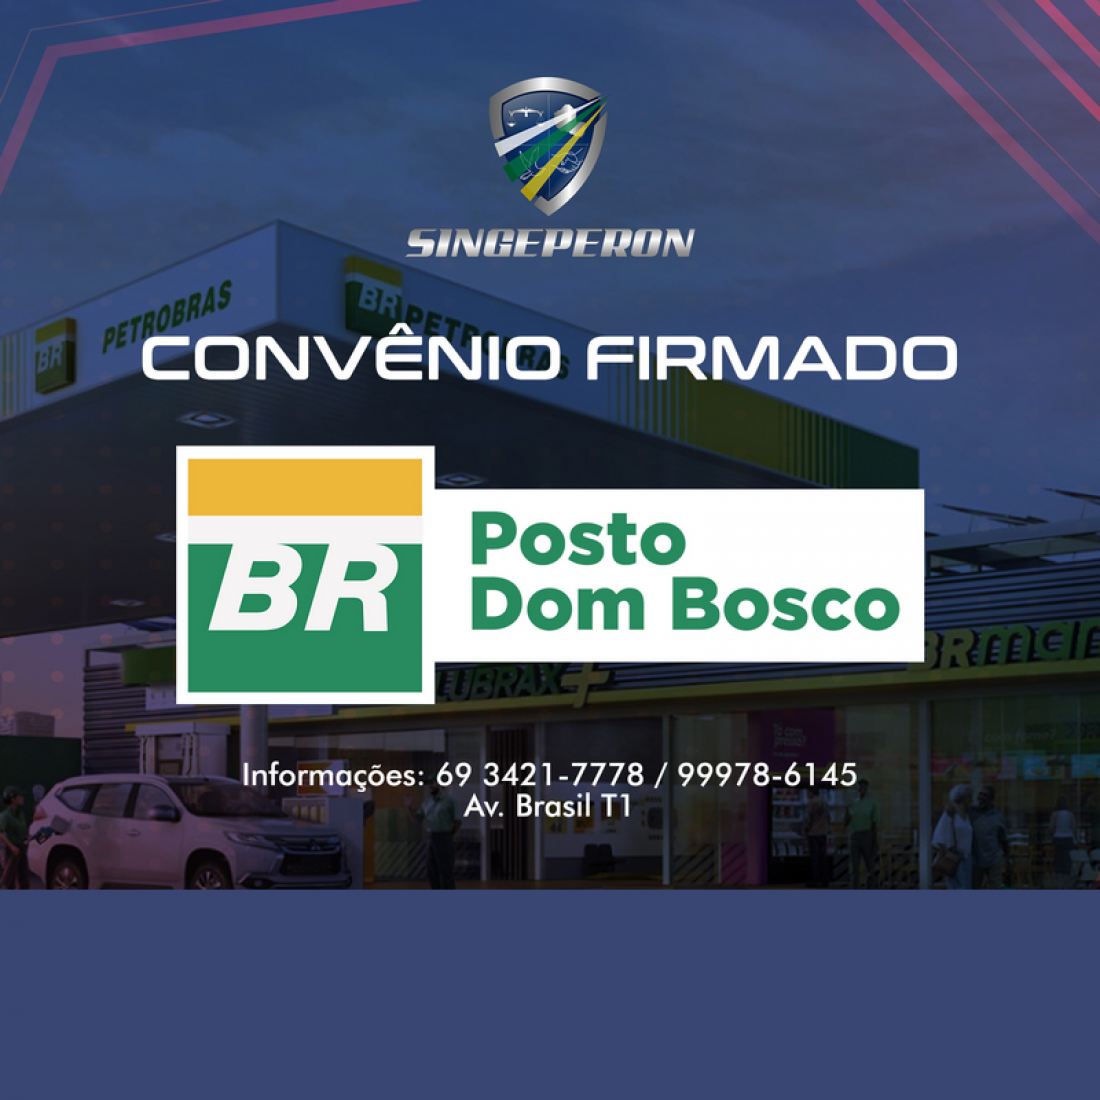 Singeperon firma convênio com  Posto Dom Bosco, em Ji-Paraná